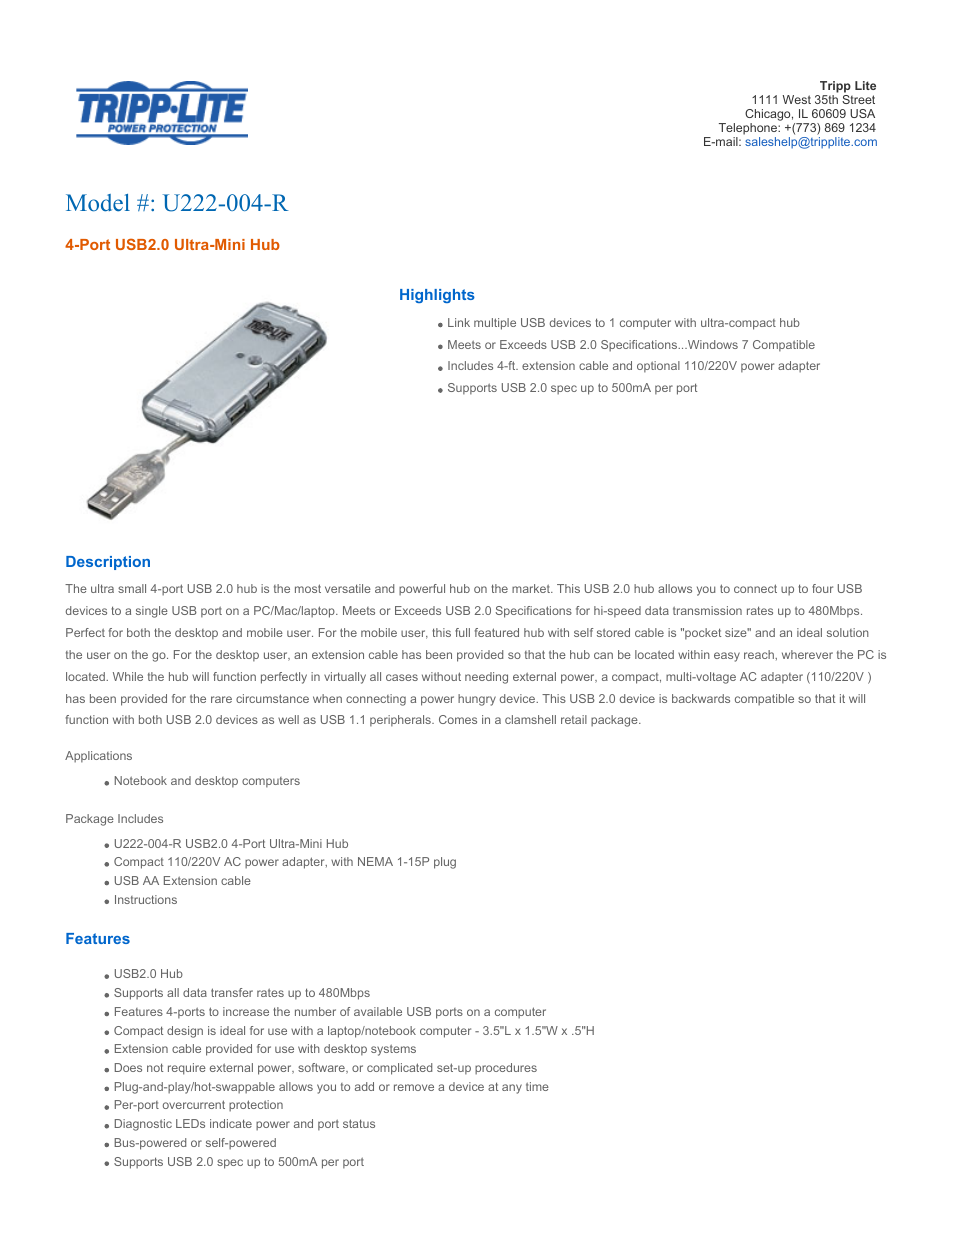 4-Port USB 2.0 Self- or Bus-Powered Ultra-Mini Hub U222-004-R